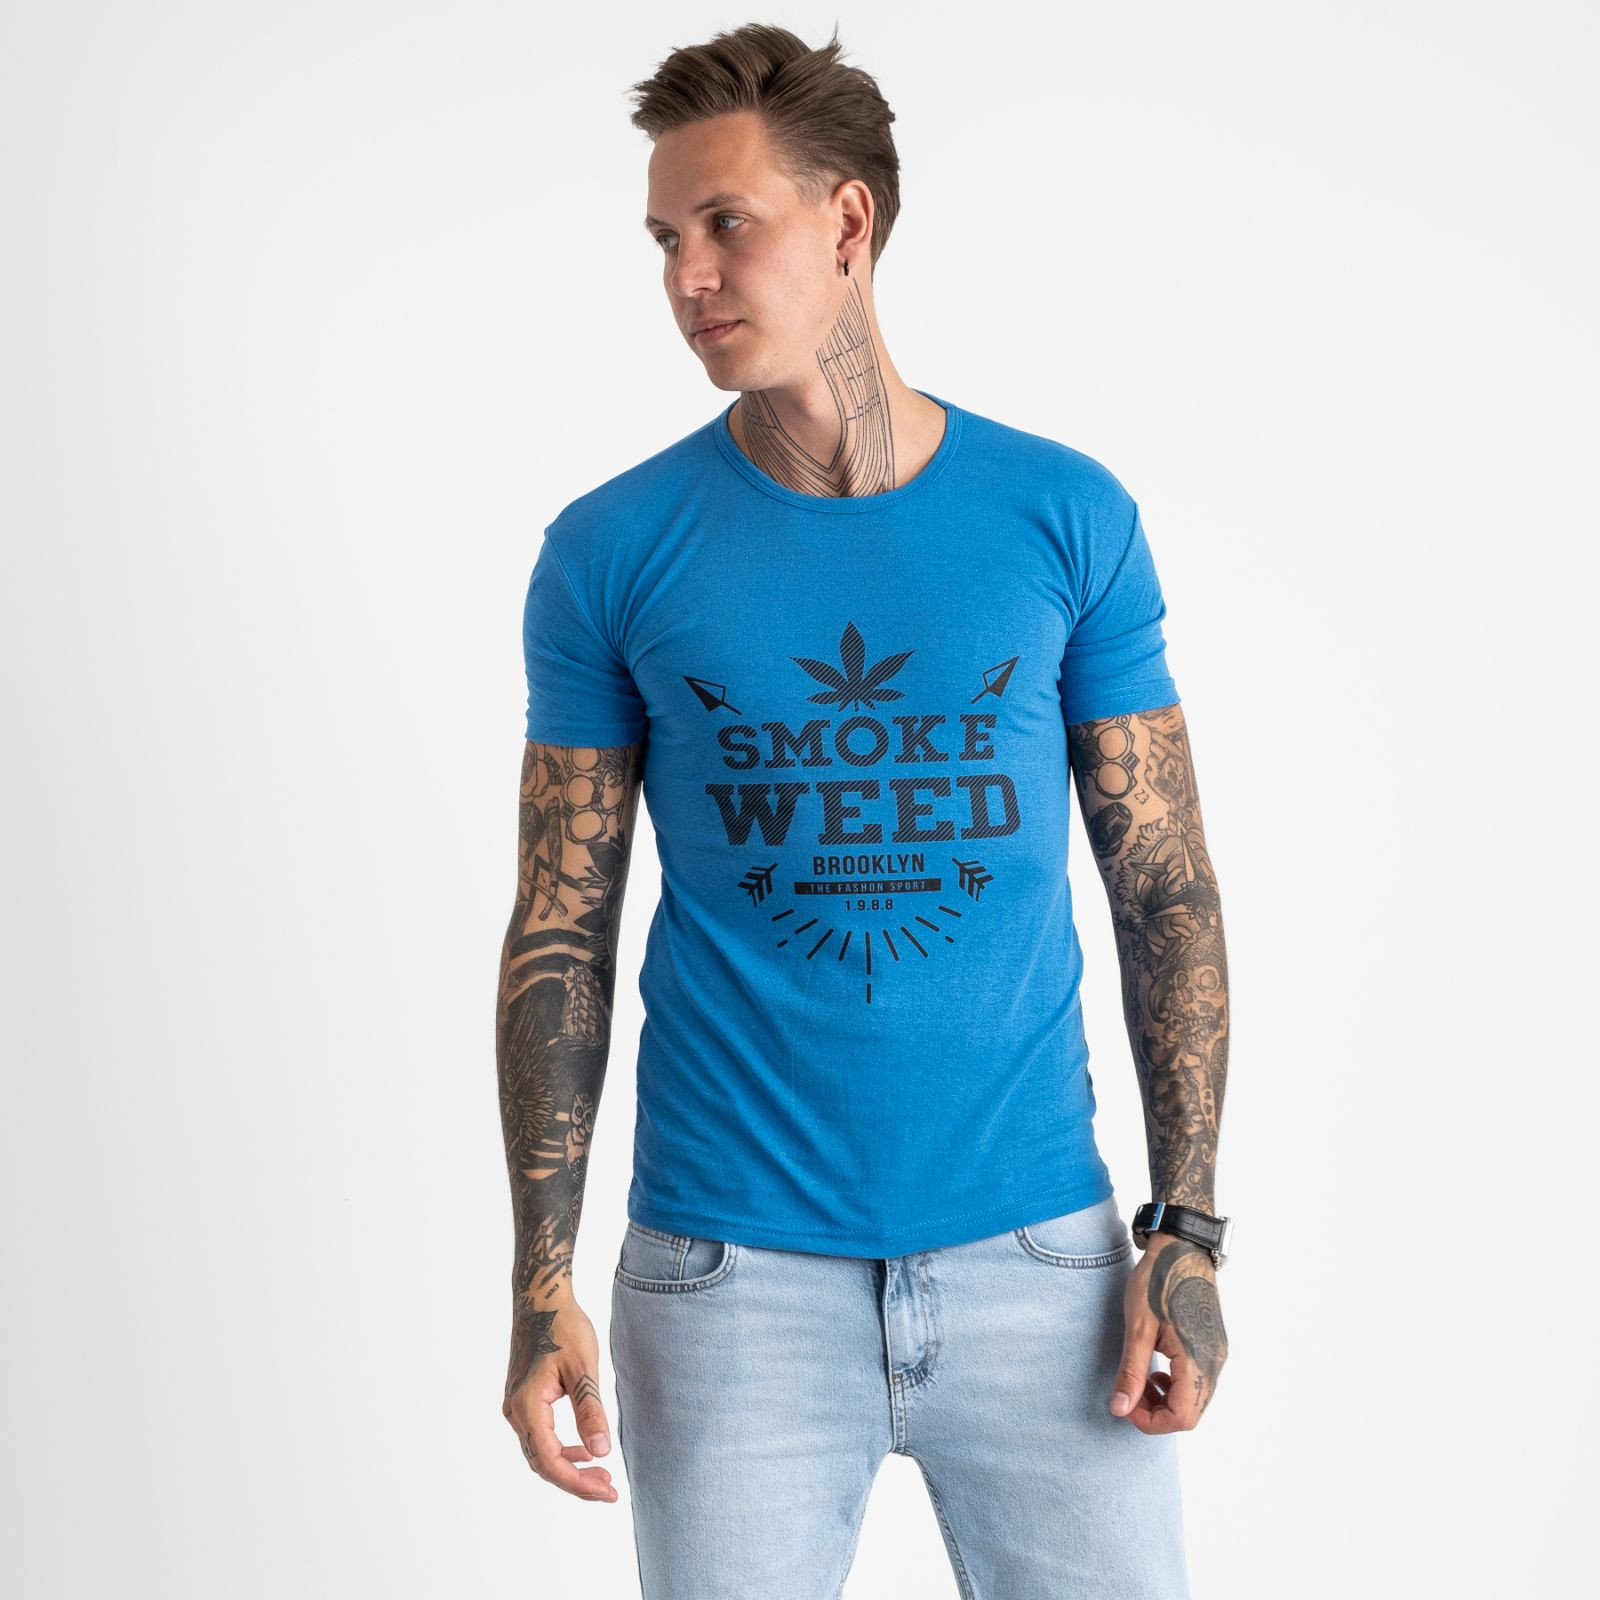 2613-12 голубая футболка мужская с принтом (4 ед. размеры: M.L.XL.2XL)